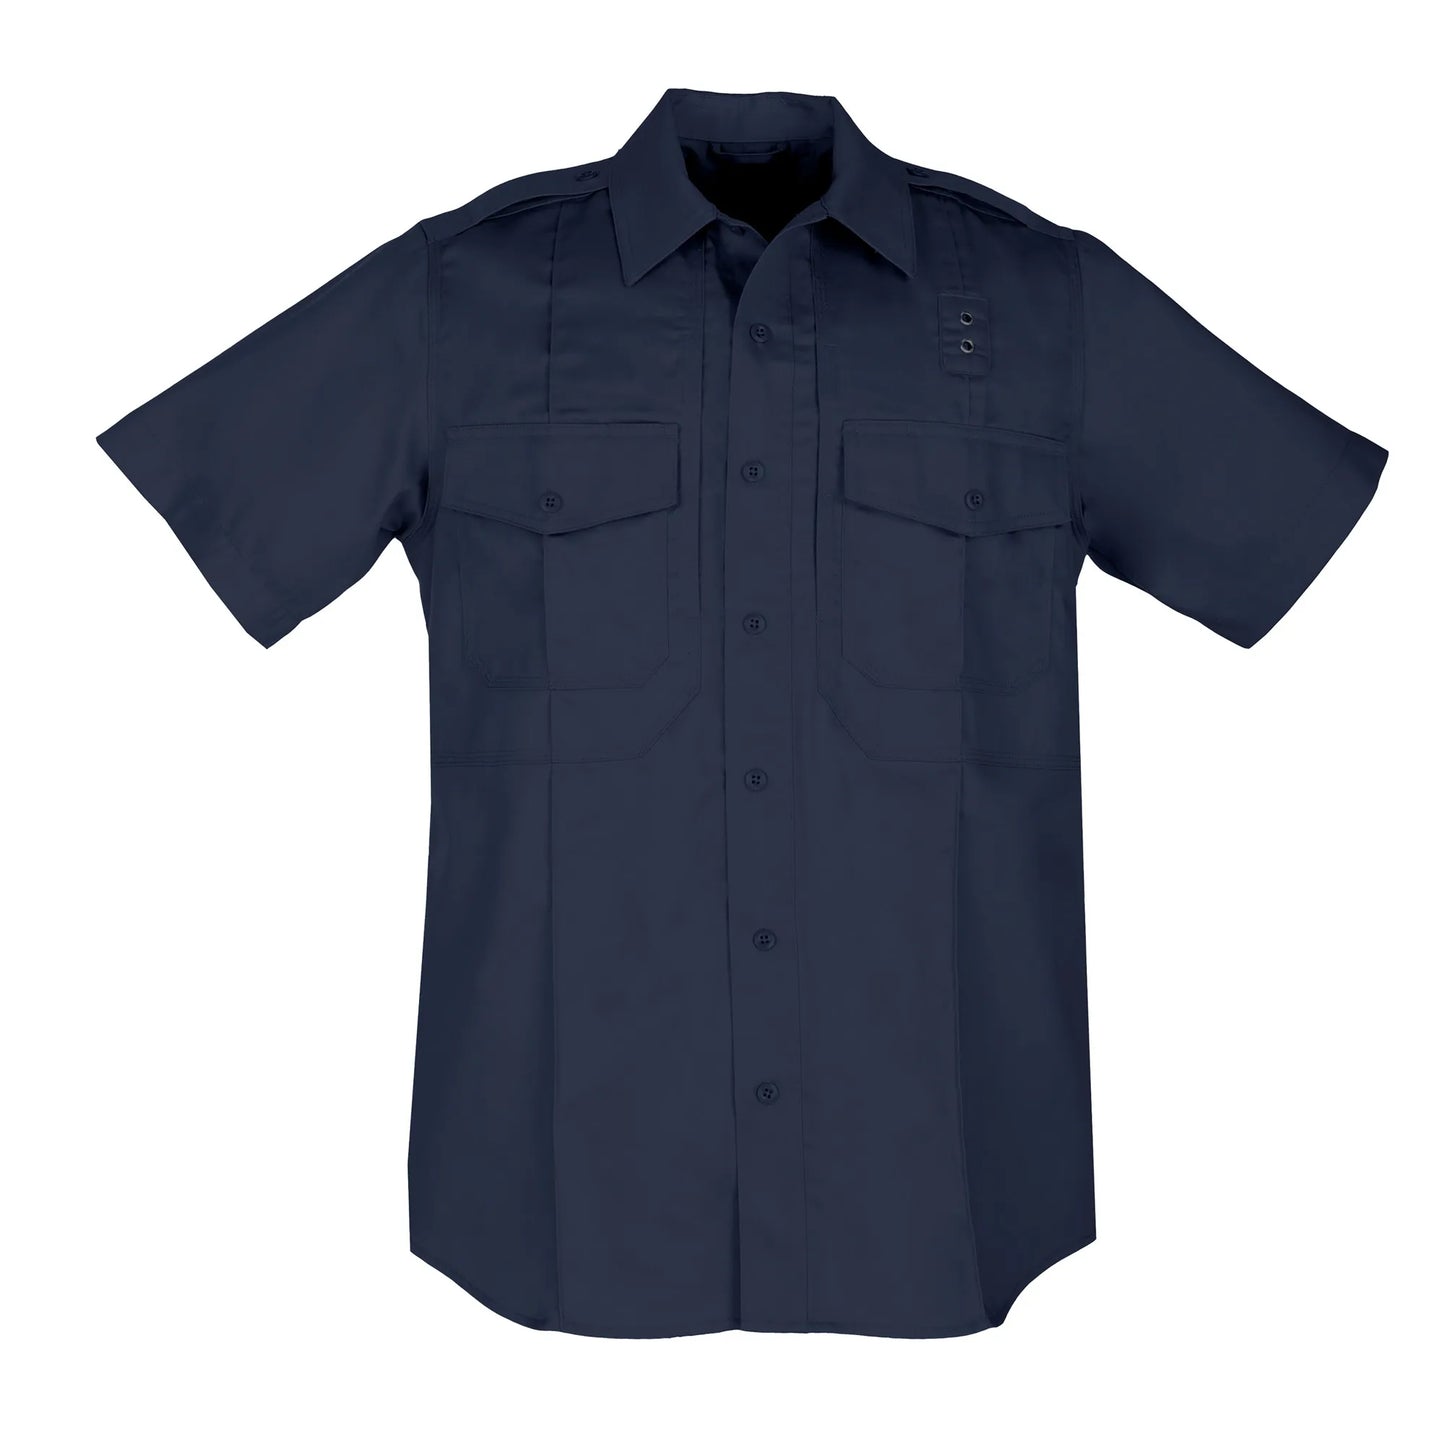 5.11 Tactical TWILL PDU Class B Short Sleeve Shirt